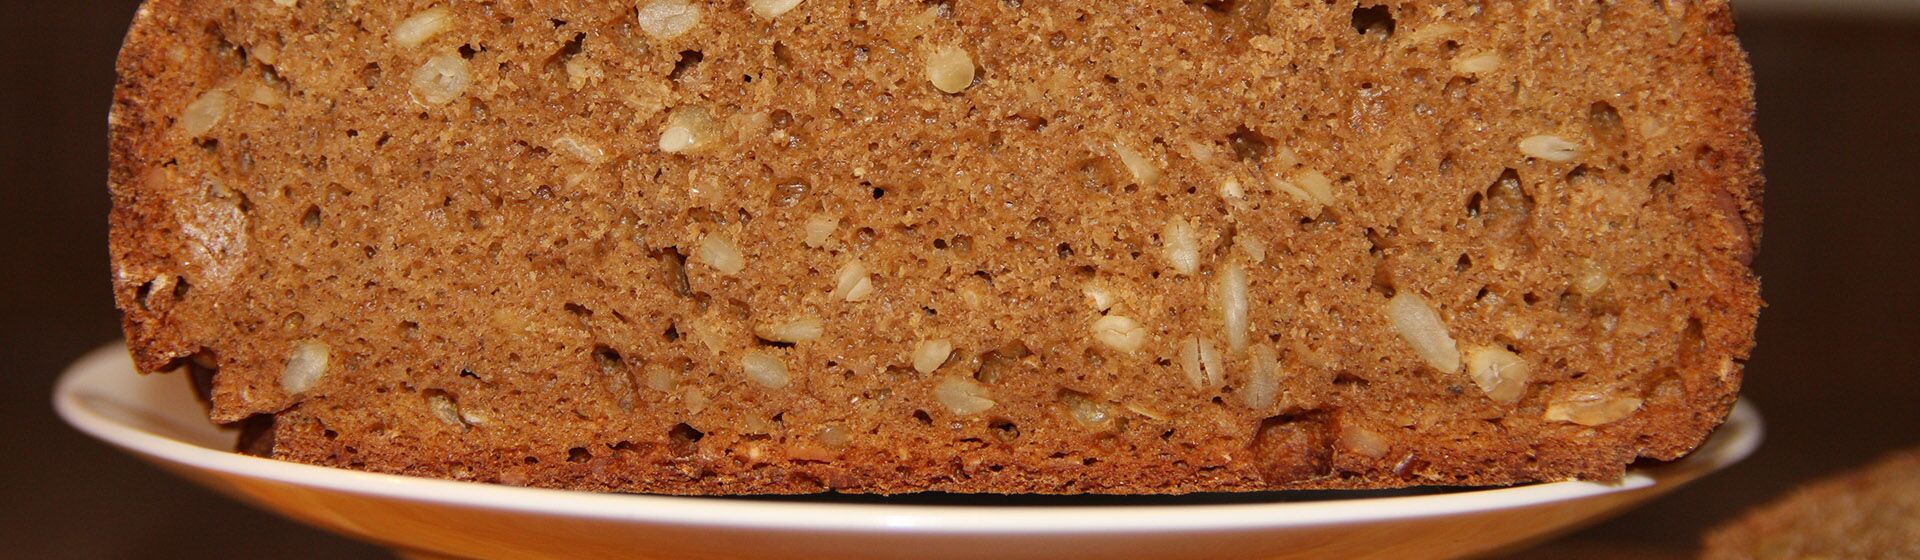 Как испечь зерновой хлеб в хлебопечке